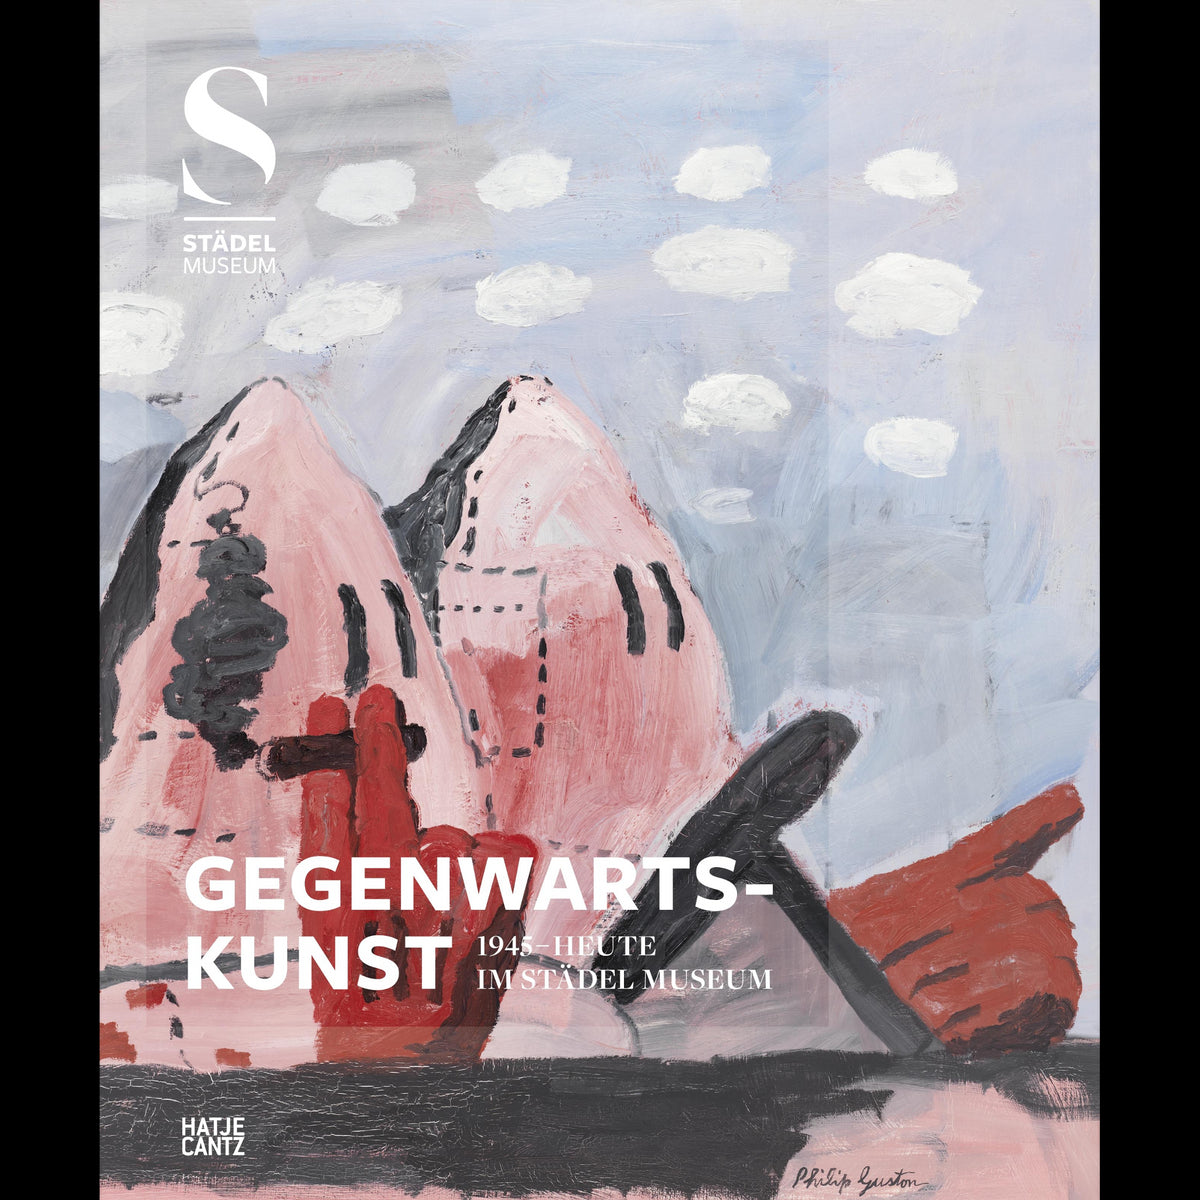 Coverbild Gegenwartskunst (1945-heute) im Städel Museum